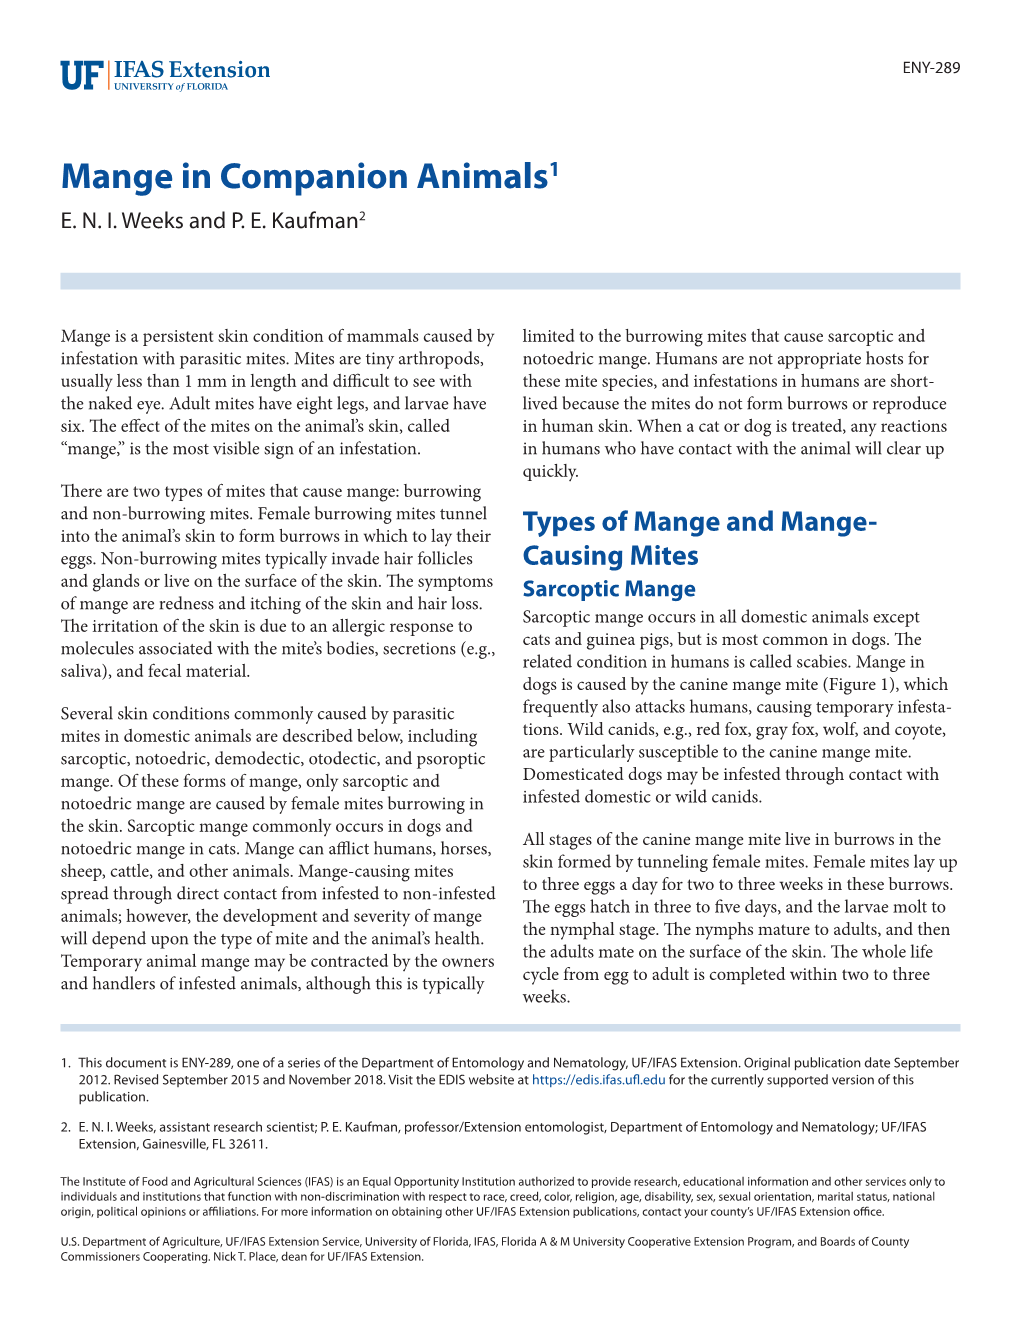 Mange in Companion Animals1 E